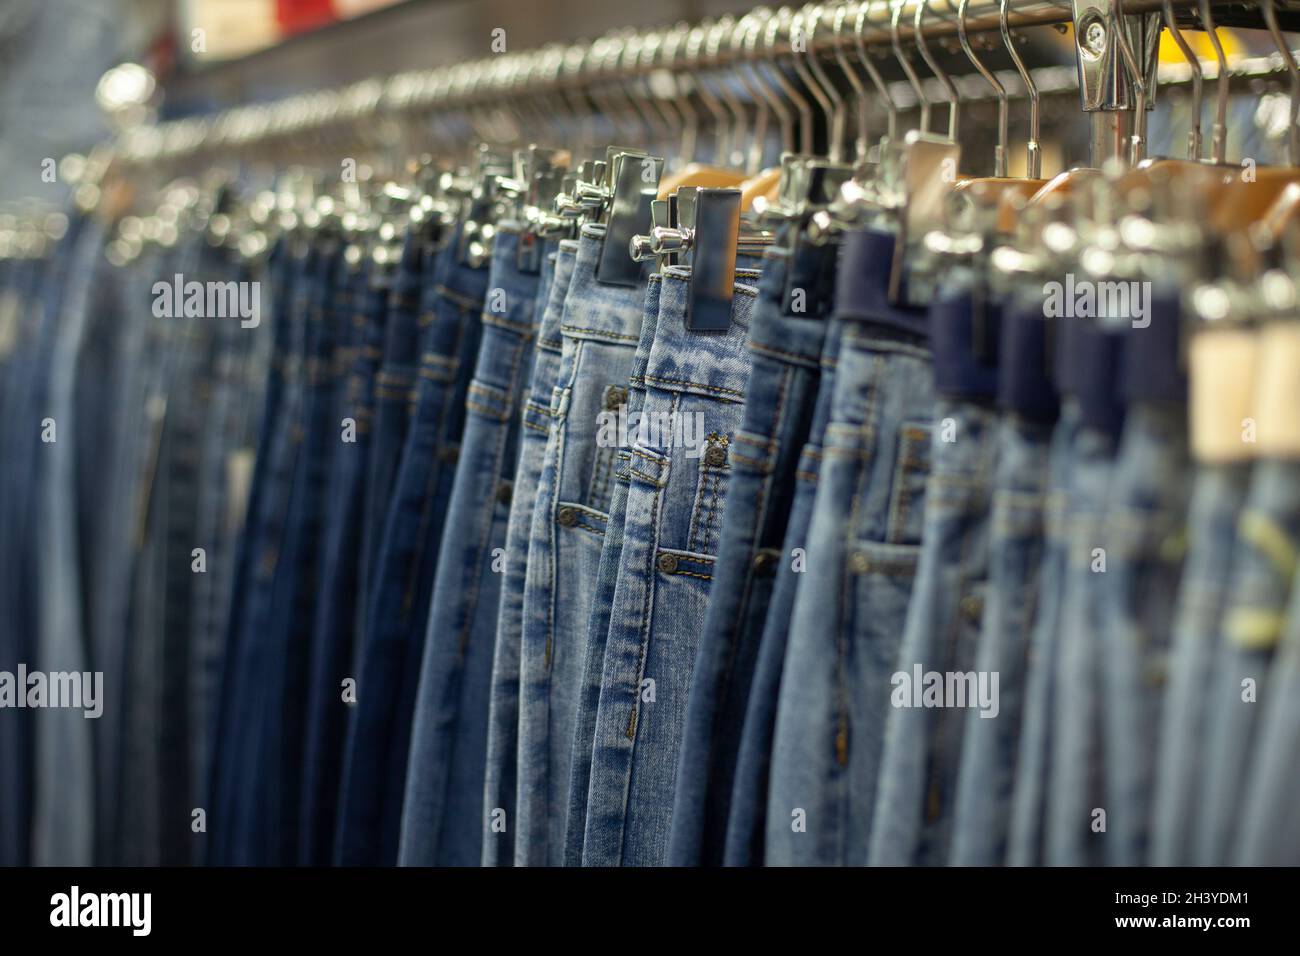 Blaue Jeans im Laden. Viele Hosen hängen in einer Reihe an Kleiderbügeln.  Denim-Bekleidung im Detail. Verkauf von Kleidung im Supermarkt  Stockfotografie - Alamy